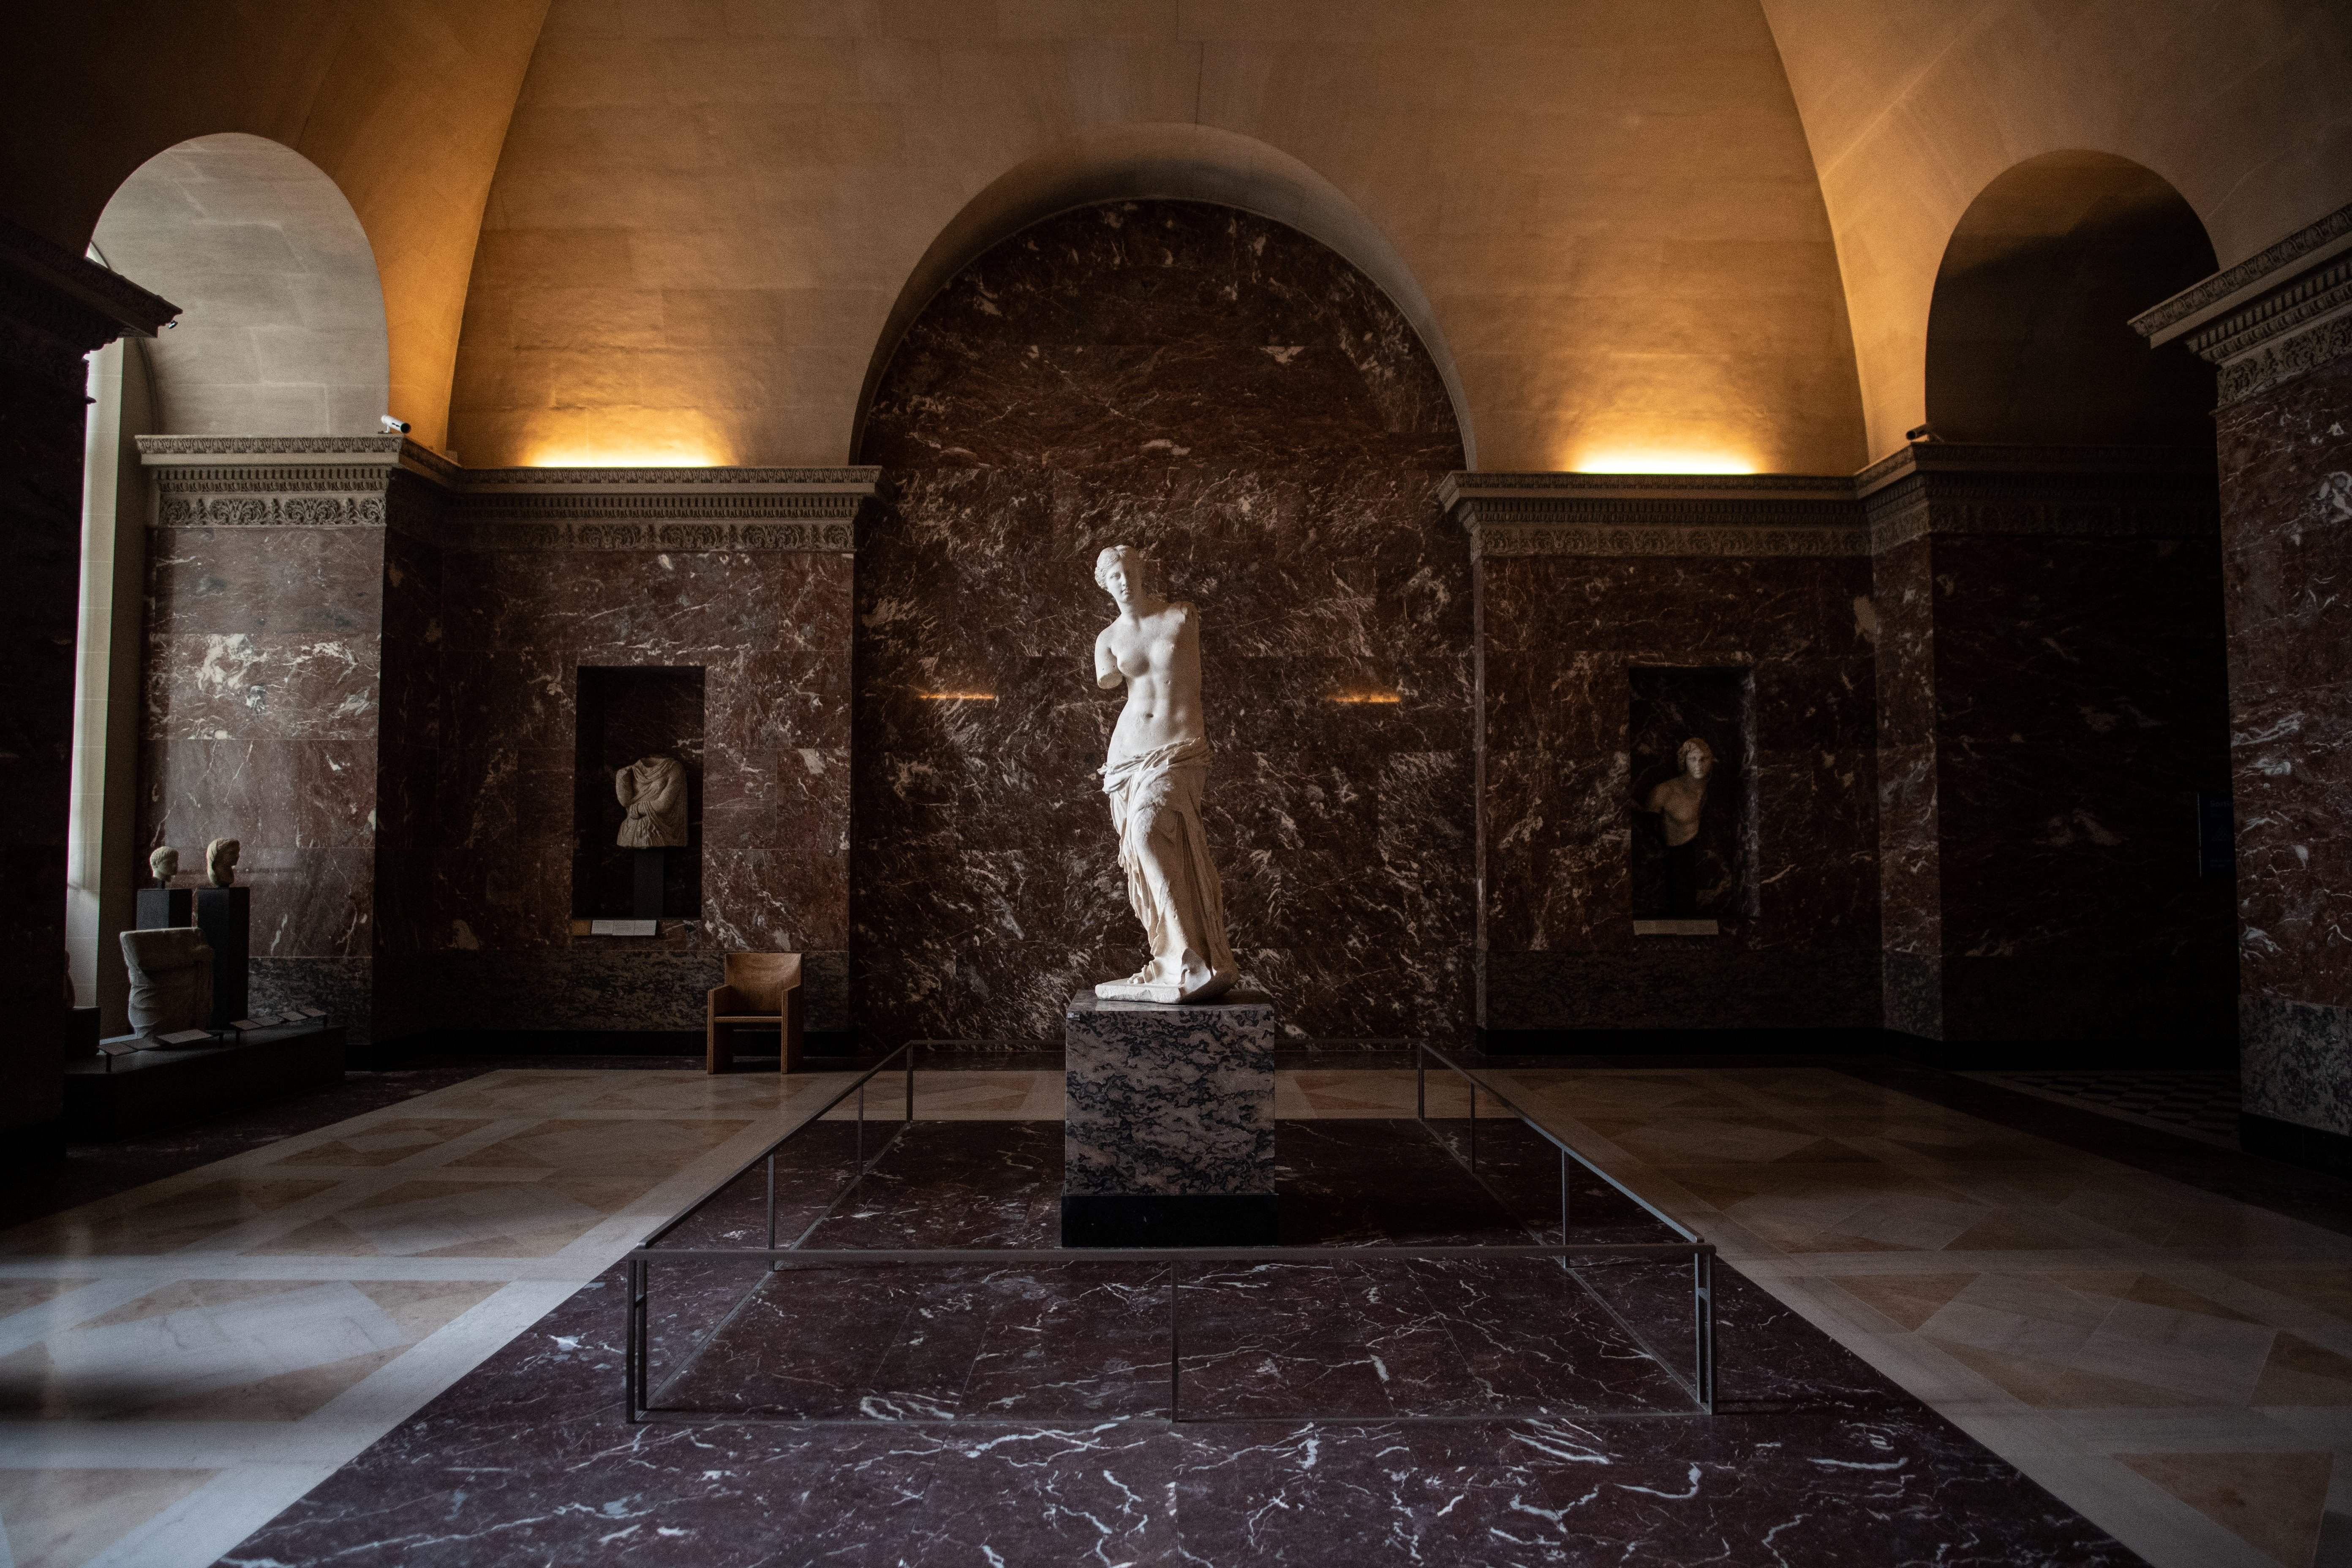 The Venus de Milo stands alone and un-admired